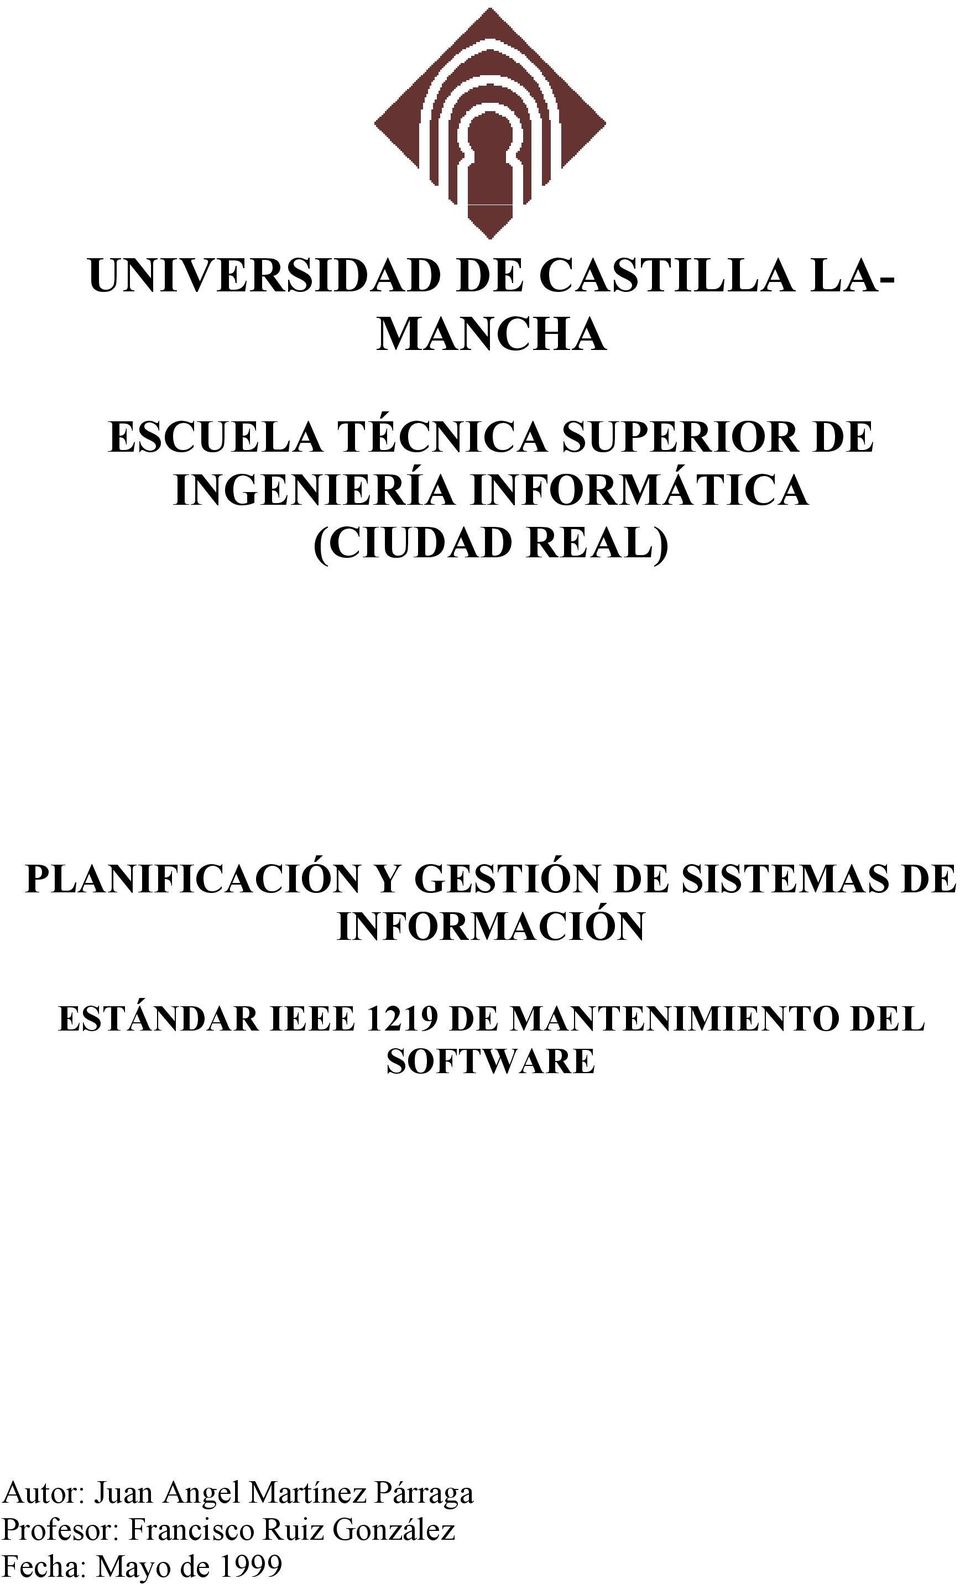 SISTEMAS DE INFORMACIÓN ESTÁNDAR IEEE 1219 DE MANTENIMIENTO DEL